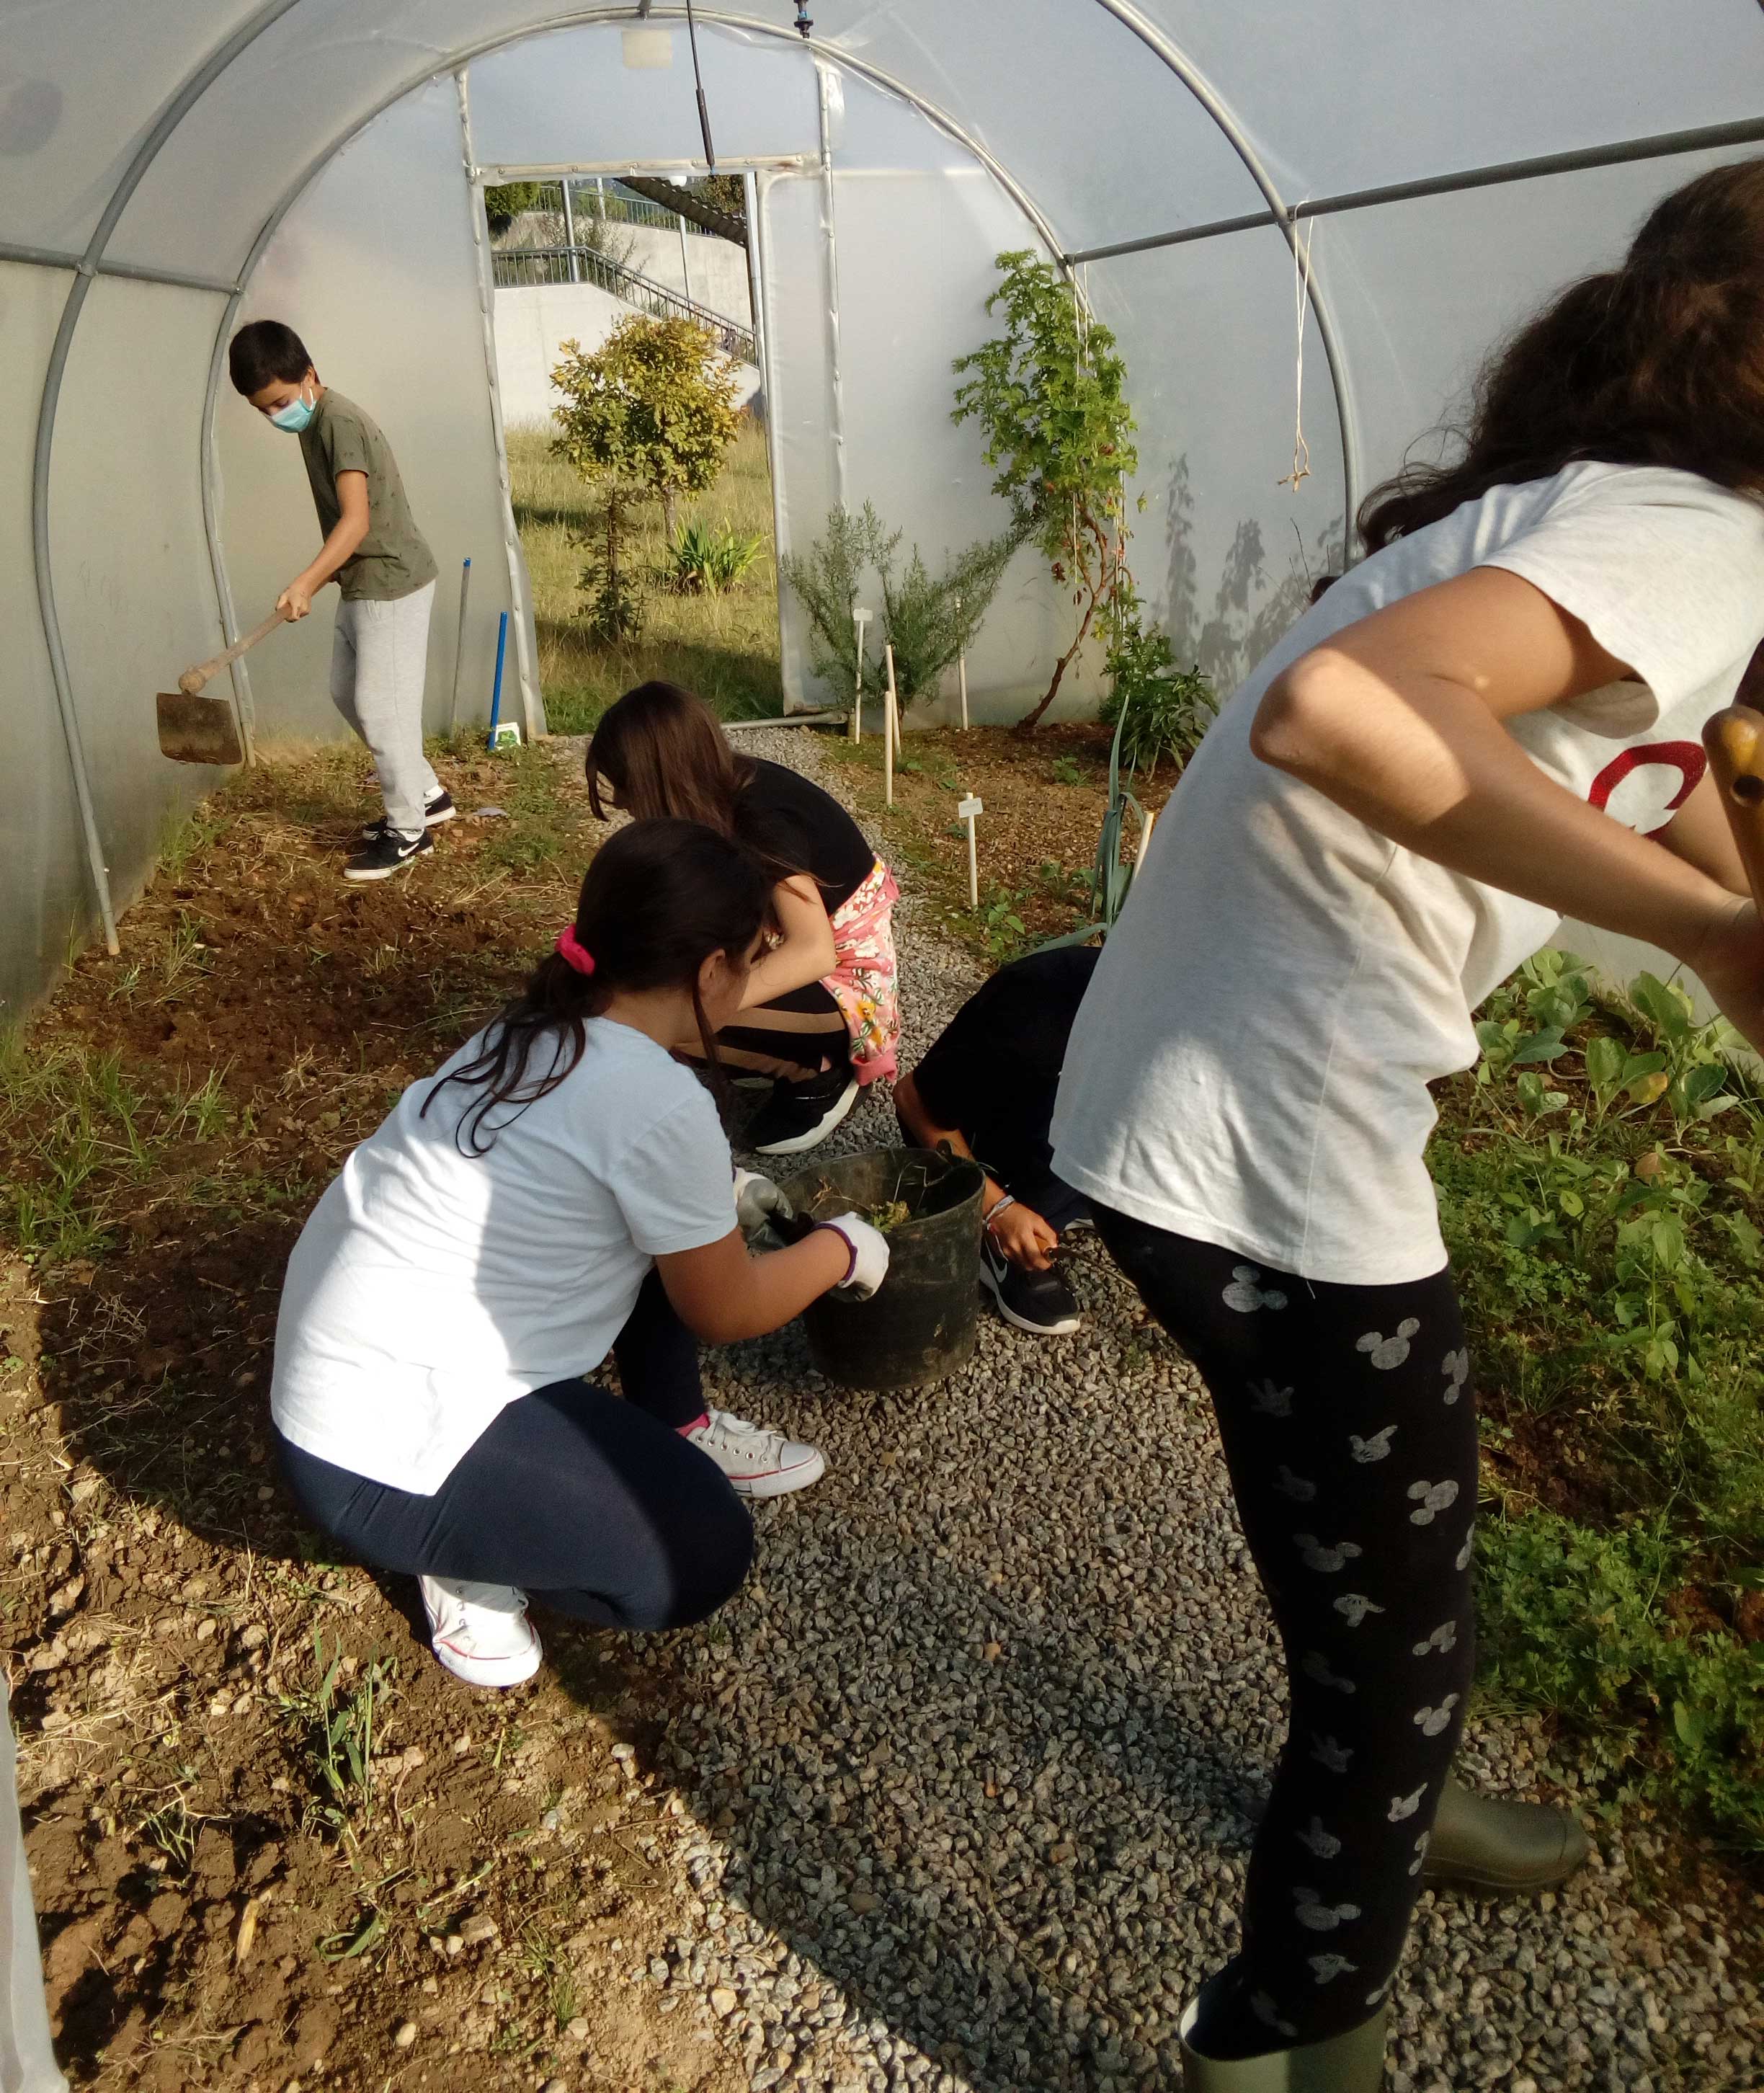 Limpeza do terreno - Estufa. Os alunos fazem a preparação do terreno para a horta na estufa.